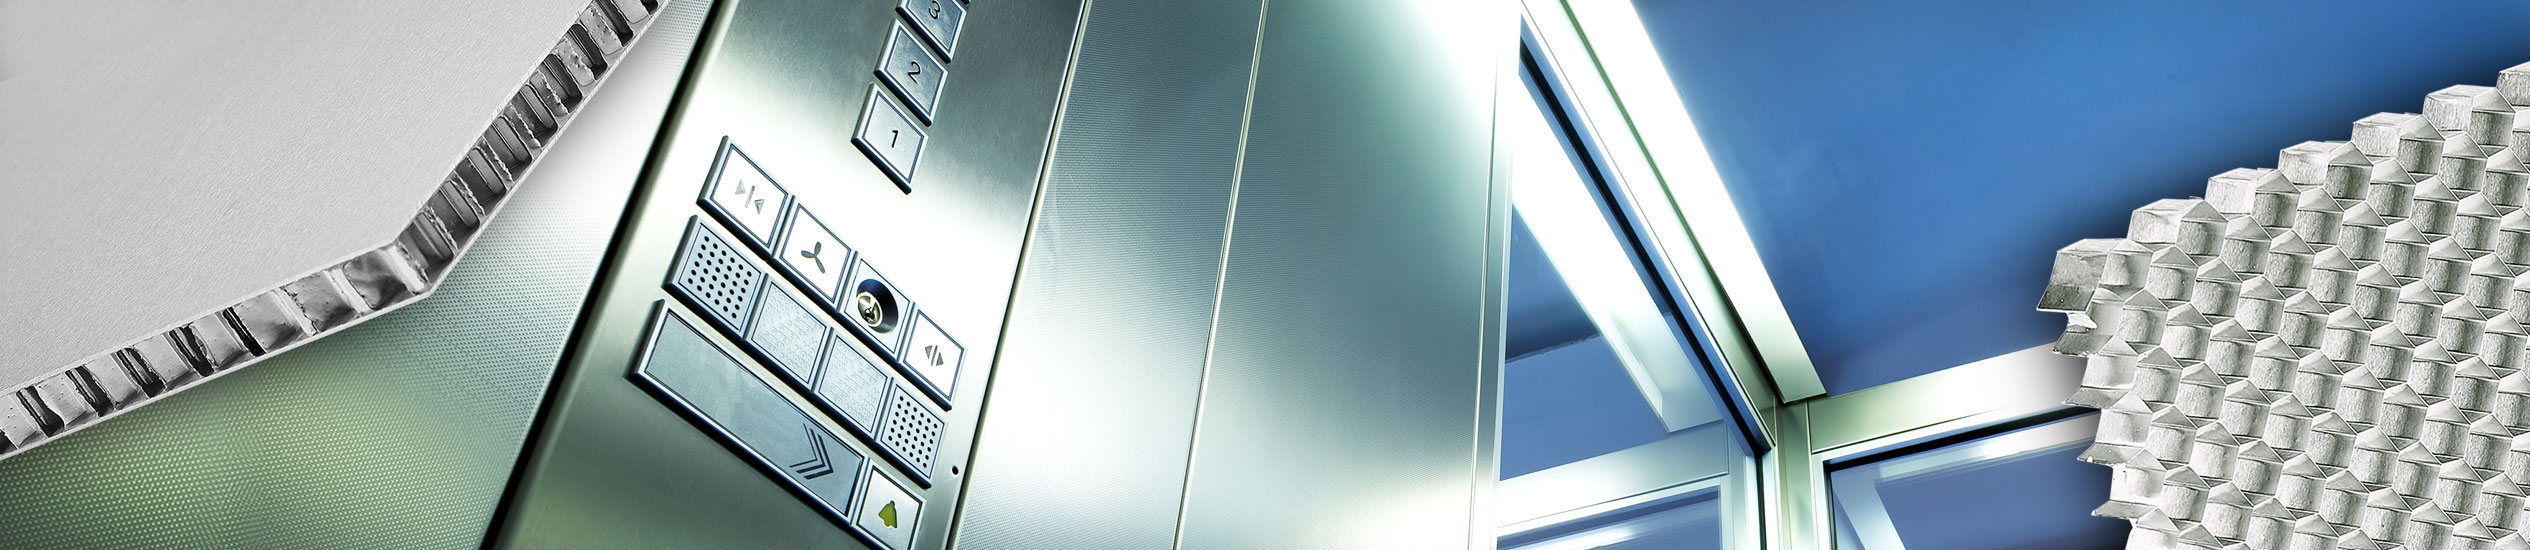 Кабины и лифты могут изготавливаться из таких сверхлегких материалов как сэндвич-панели. Этот эстетически изысканный, с широким спектром отделки материал постав